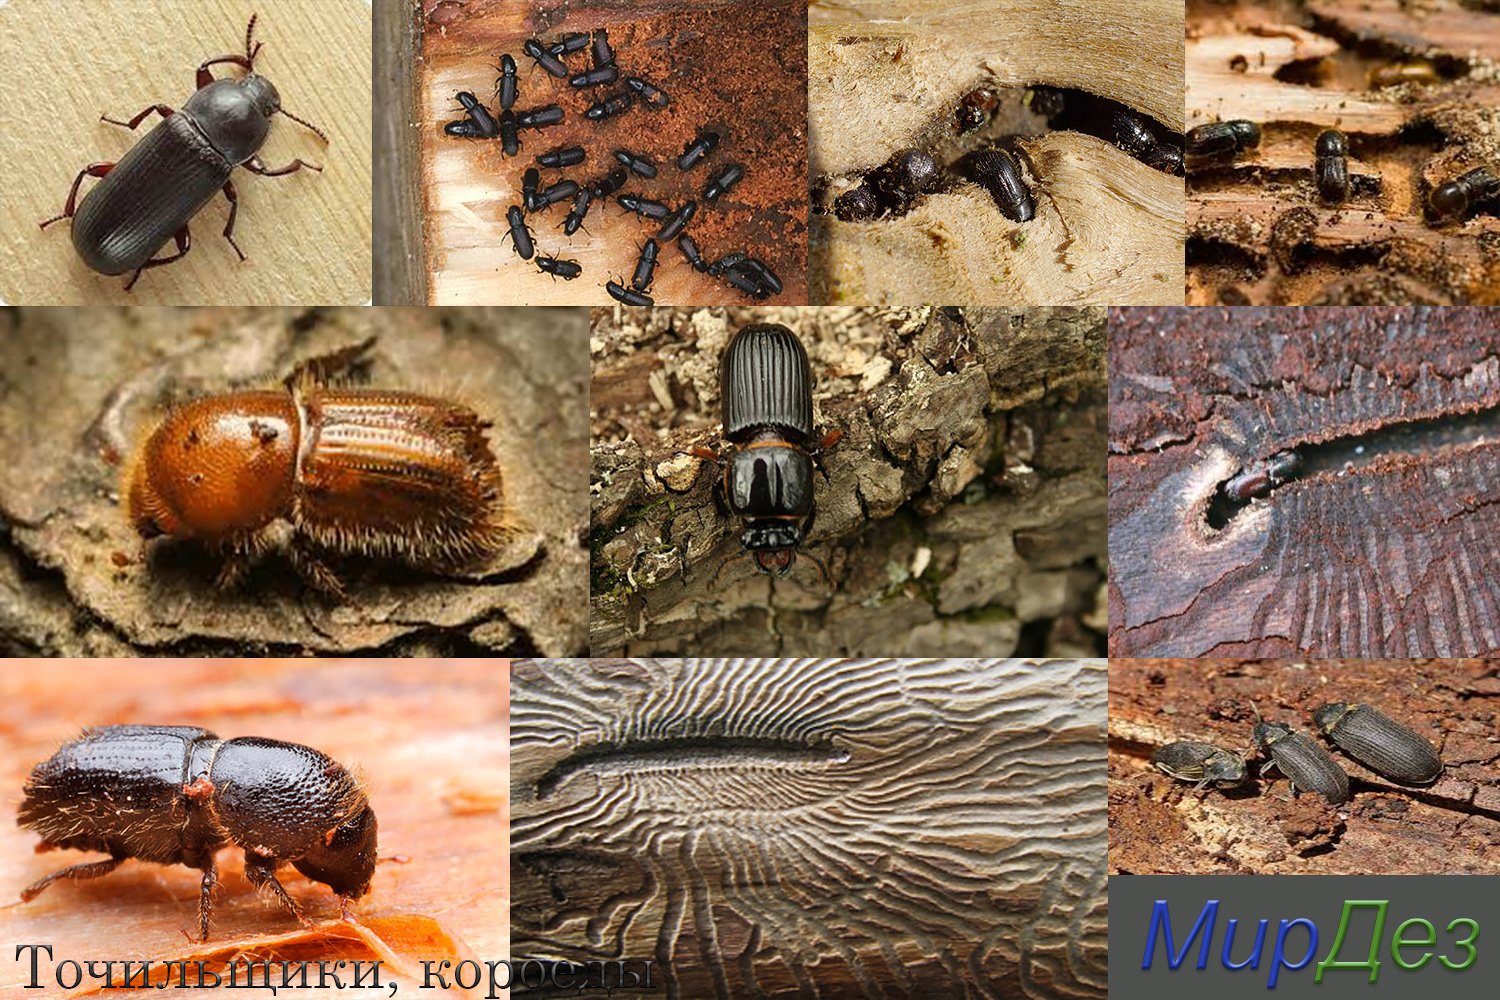 Как обнаружить жука-точильщика в деревянном доме, признаки и способы избавления